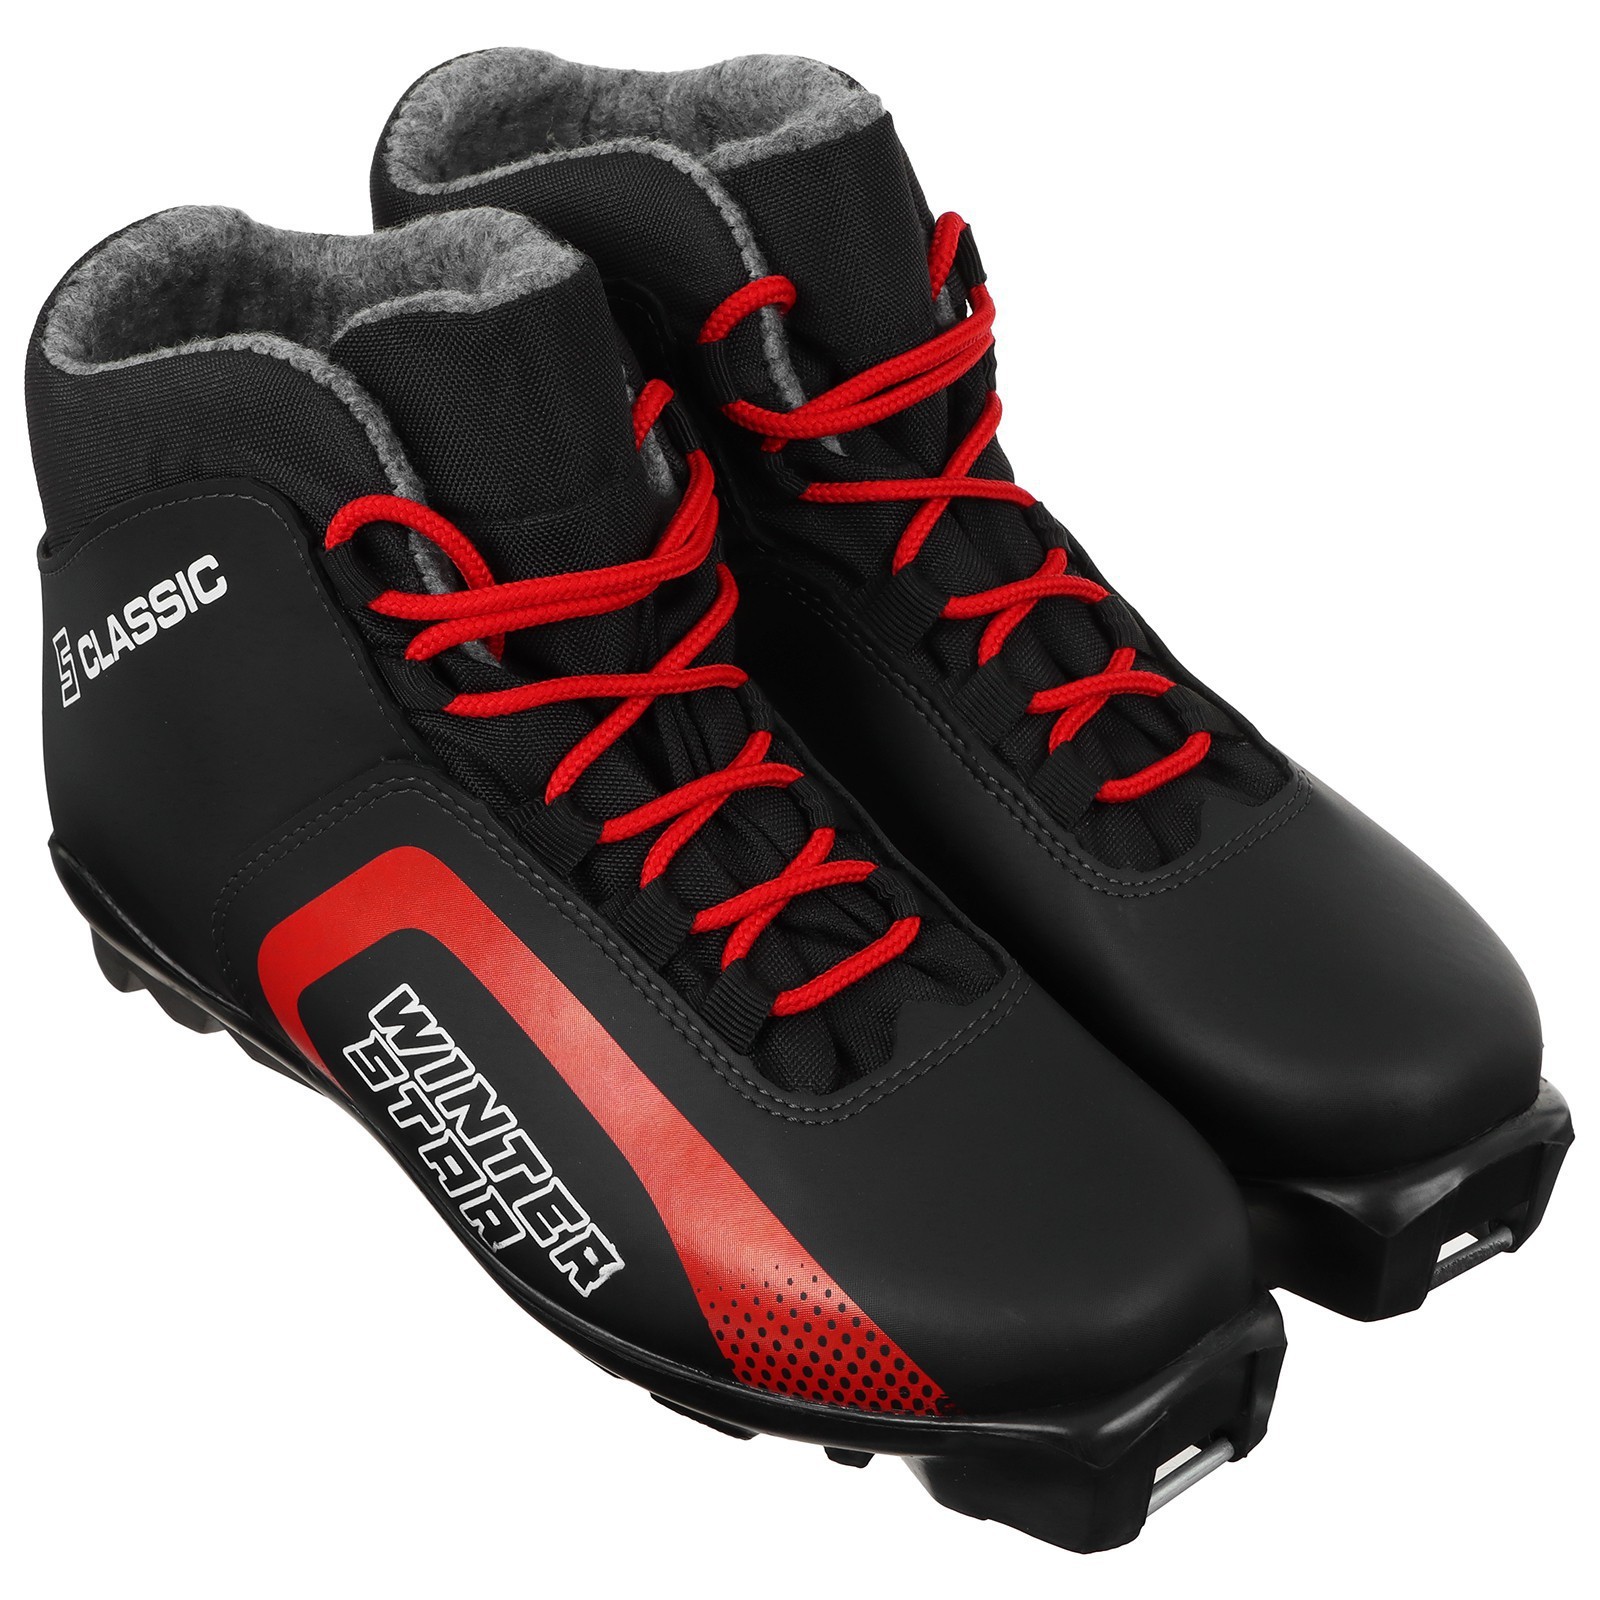 Ботинки лыжные Winter Star classic, SNS, цвет чёрный/красный